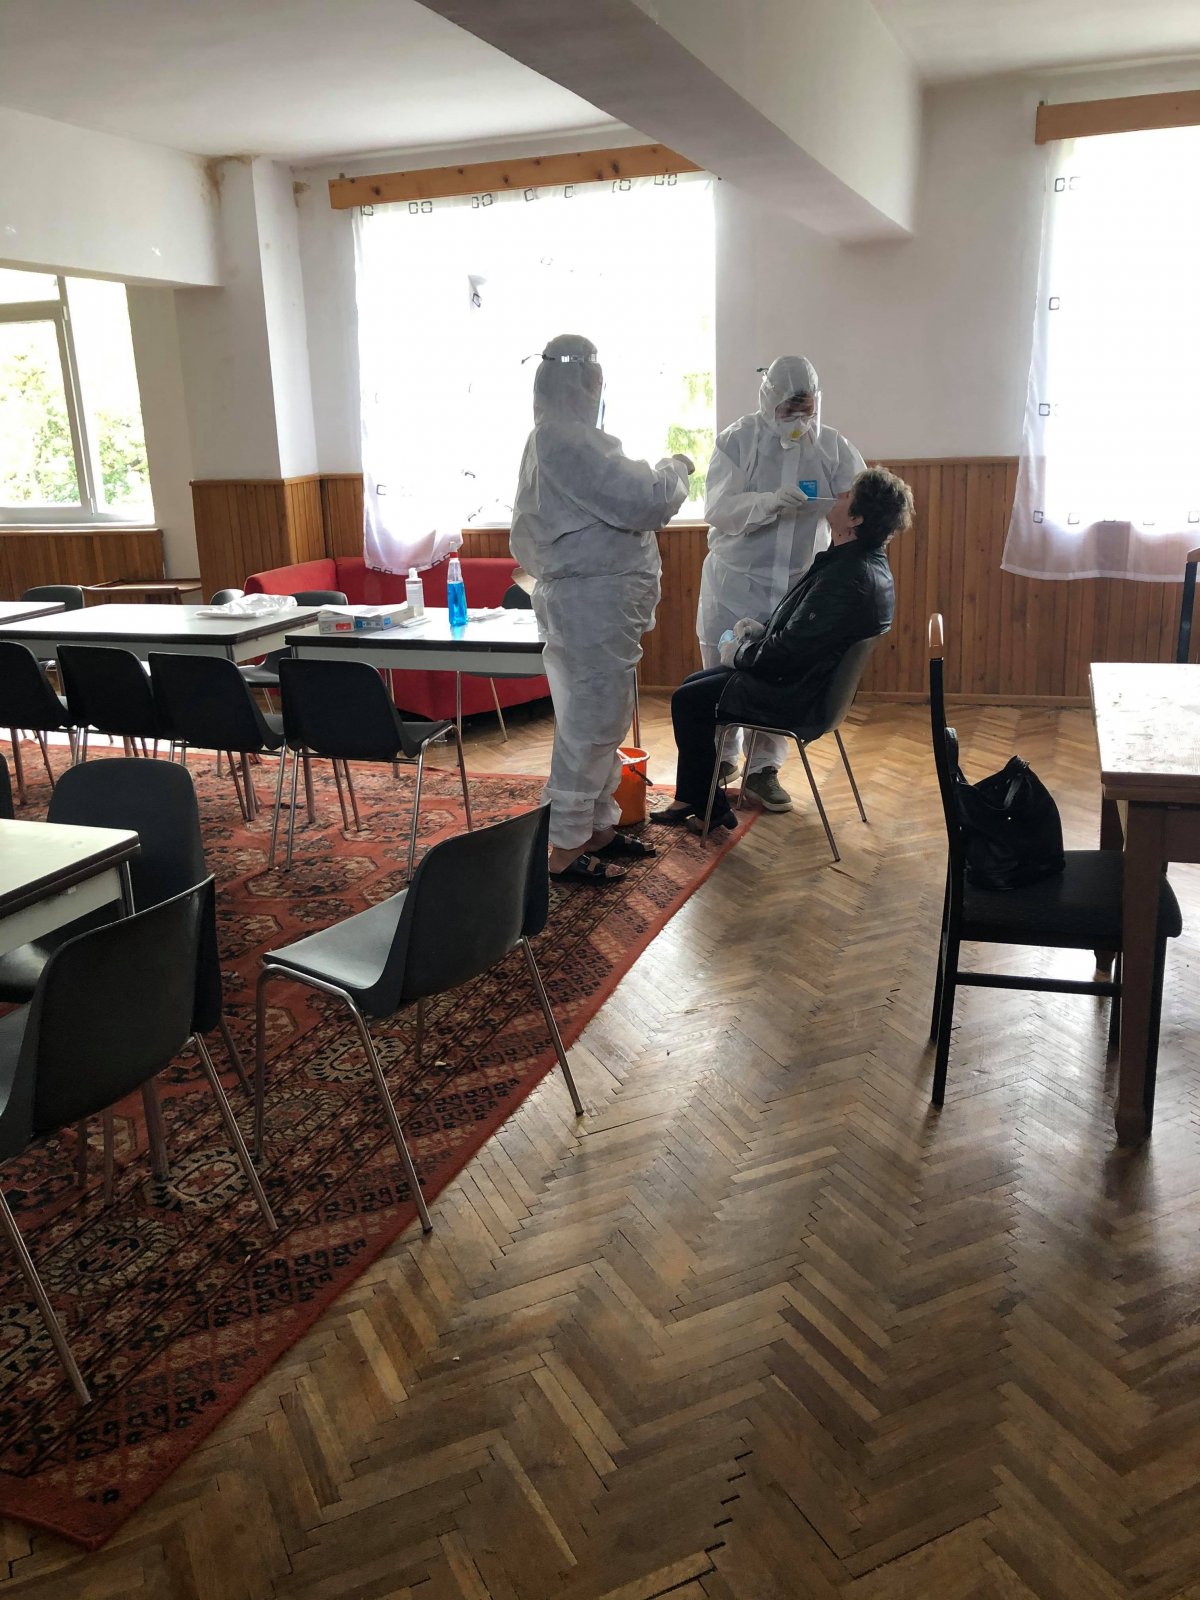 S-a încheiat o nouă sesiune de testare preventivă SARS-CoV-2 în centrele rezidențiale din subordinea DGASPC Arad. Din 819 probe prelevate, 793 sunt negative, iar 26 au fost confirmate pozitiv